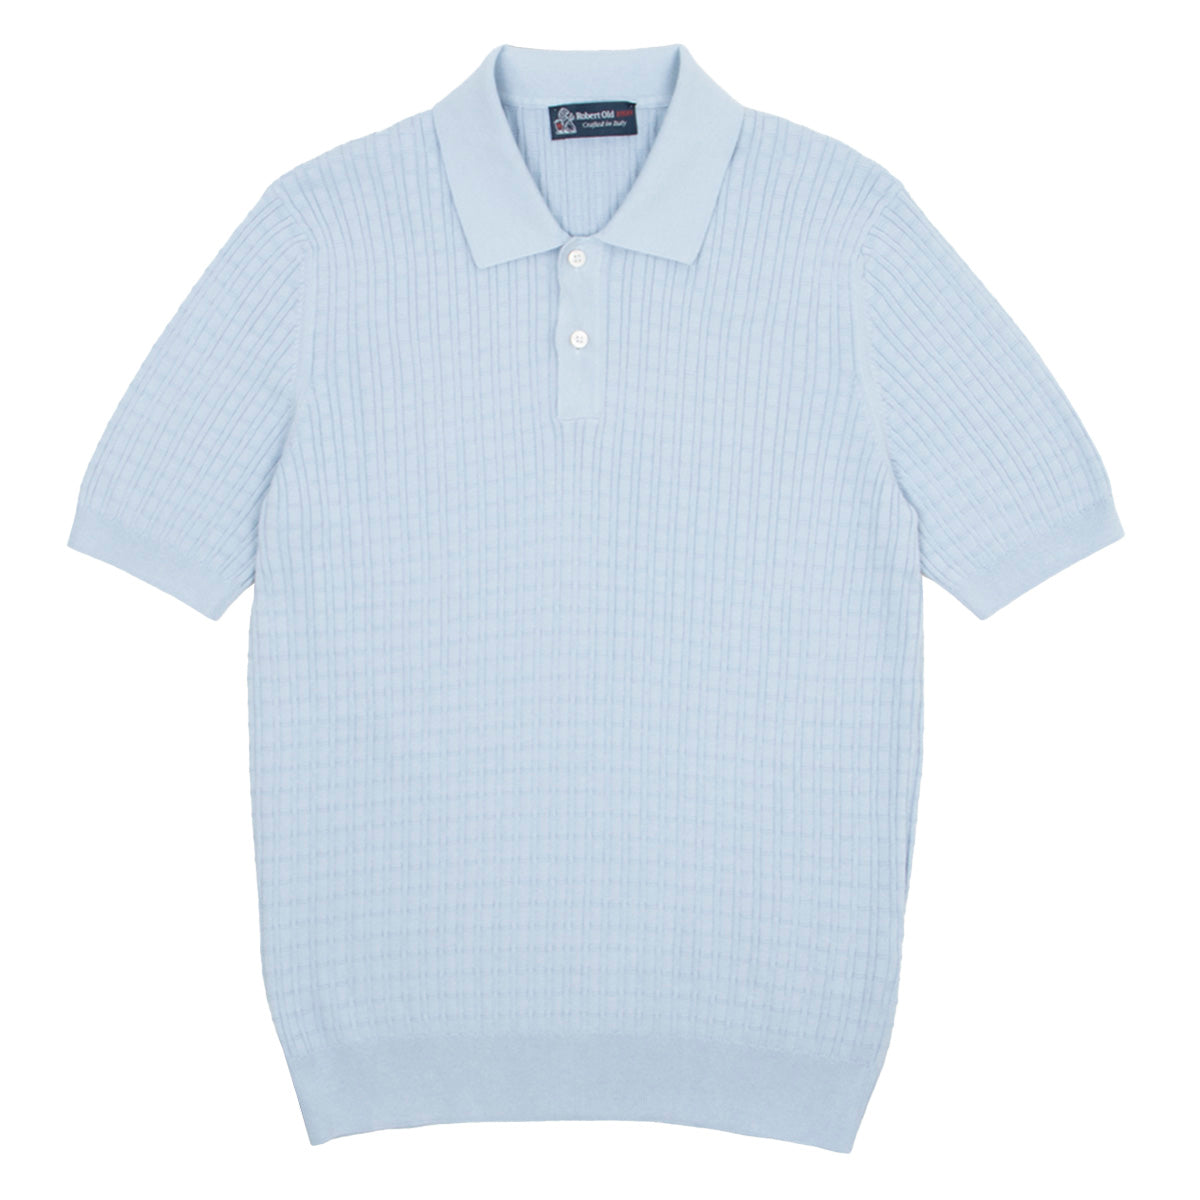 Light Blue 100% Cotton Knit Short Sleeve Polo Shirt  Robert Old   